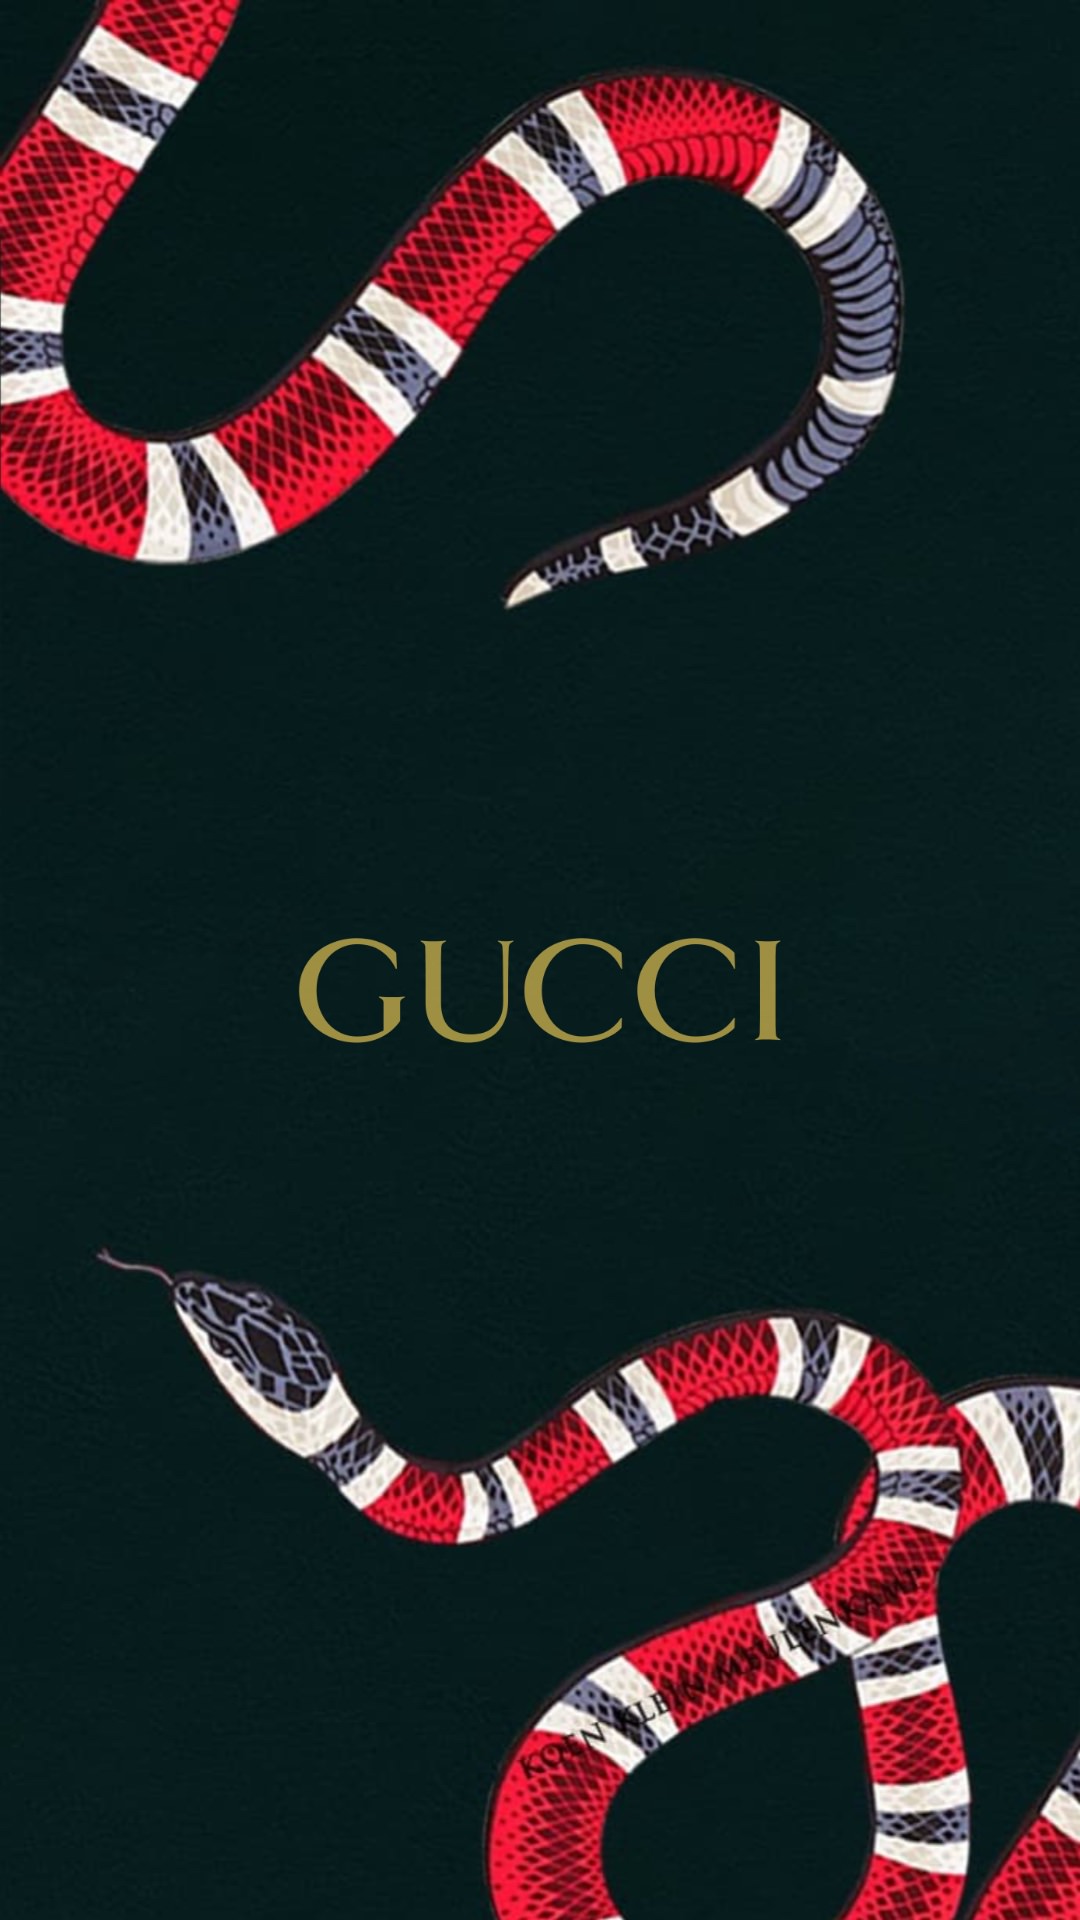 ビヨン 配置 暴力 Gucci 画像 壁紙 Mihara Cl Jp